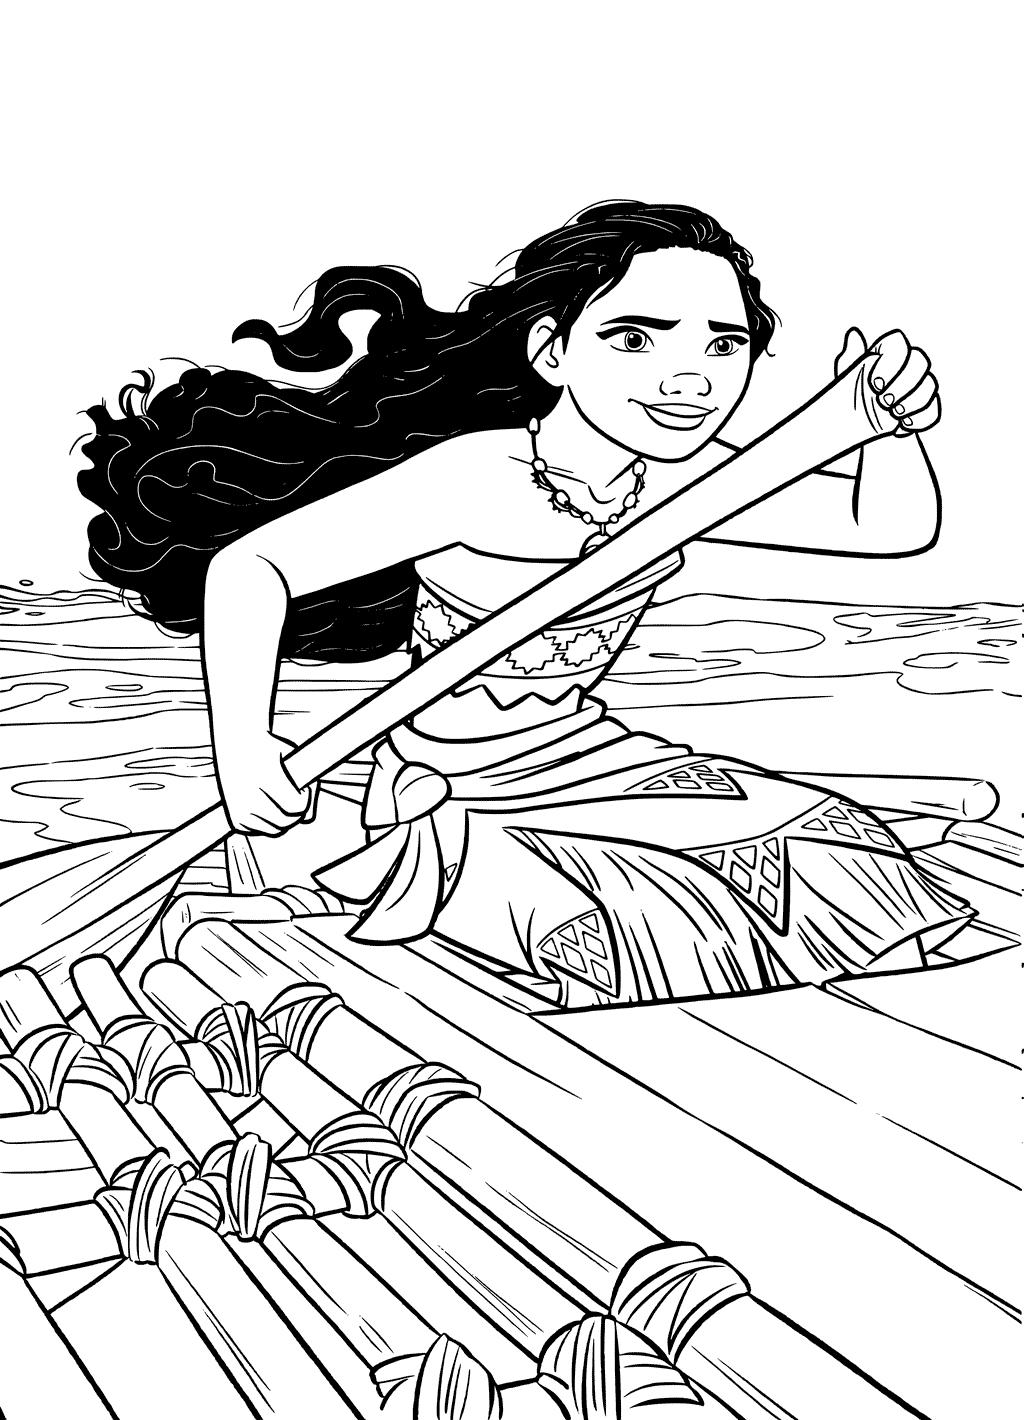 Раскраски к современному мультфильму Моана для детей  Раскраска Моана с веслом в руках